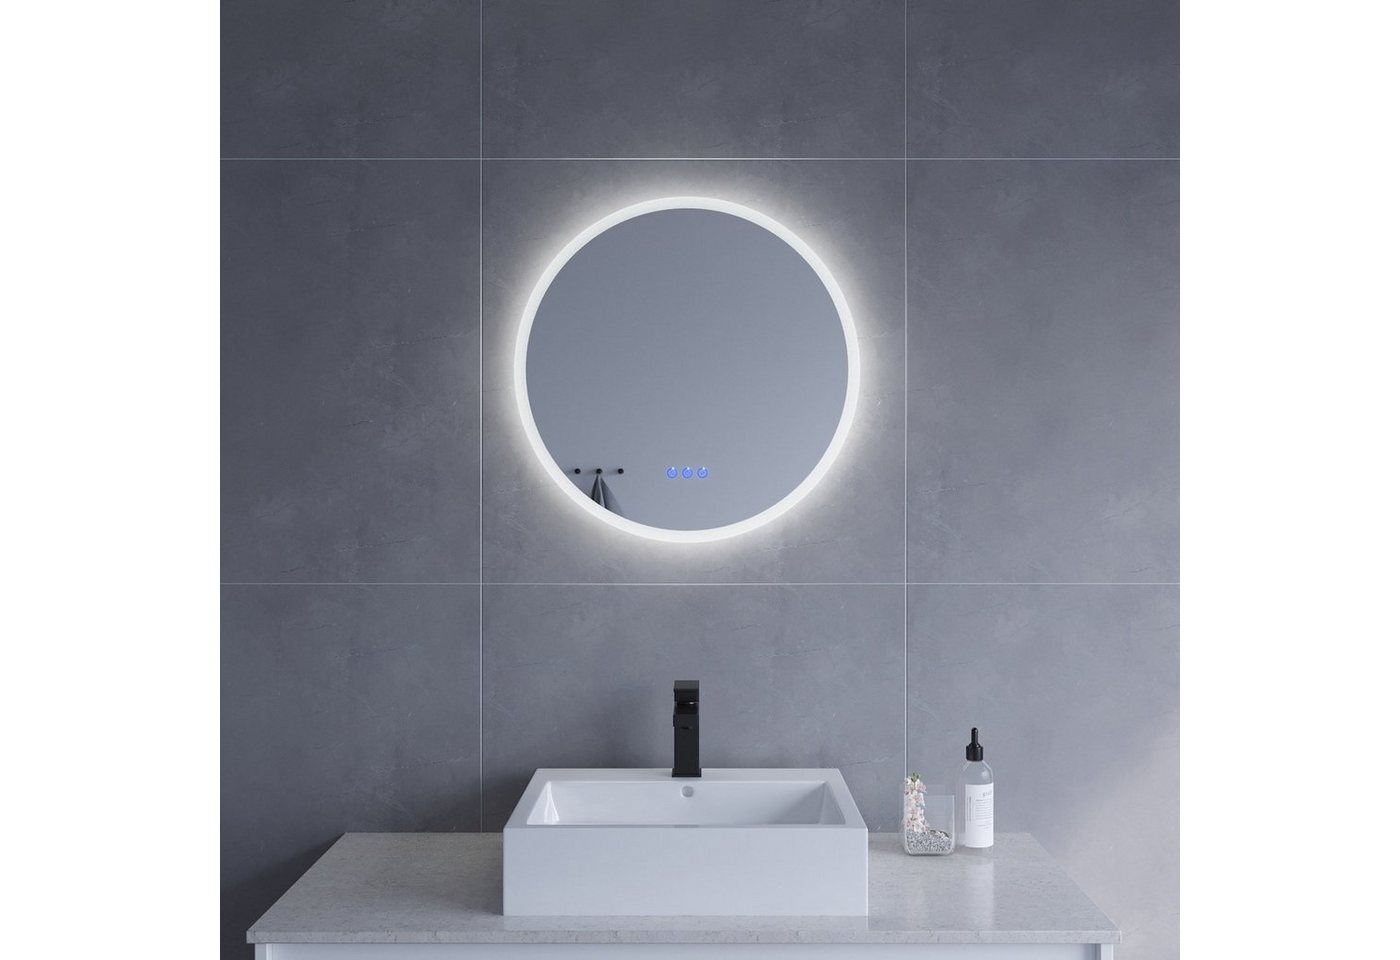 AQUALAVOS Badspiegel Spiegel Rund Badezimmerspiegel mit LED Beleuchtung Φ 60 cm Wandspiegel, mit 6400K Kaltweiß&Warmweiß 3000K Licht Beleuchtung, Energiesparender von AQUALAVOS